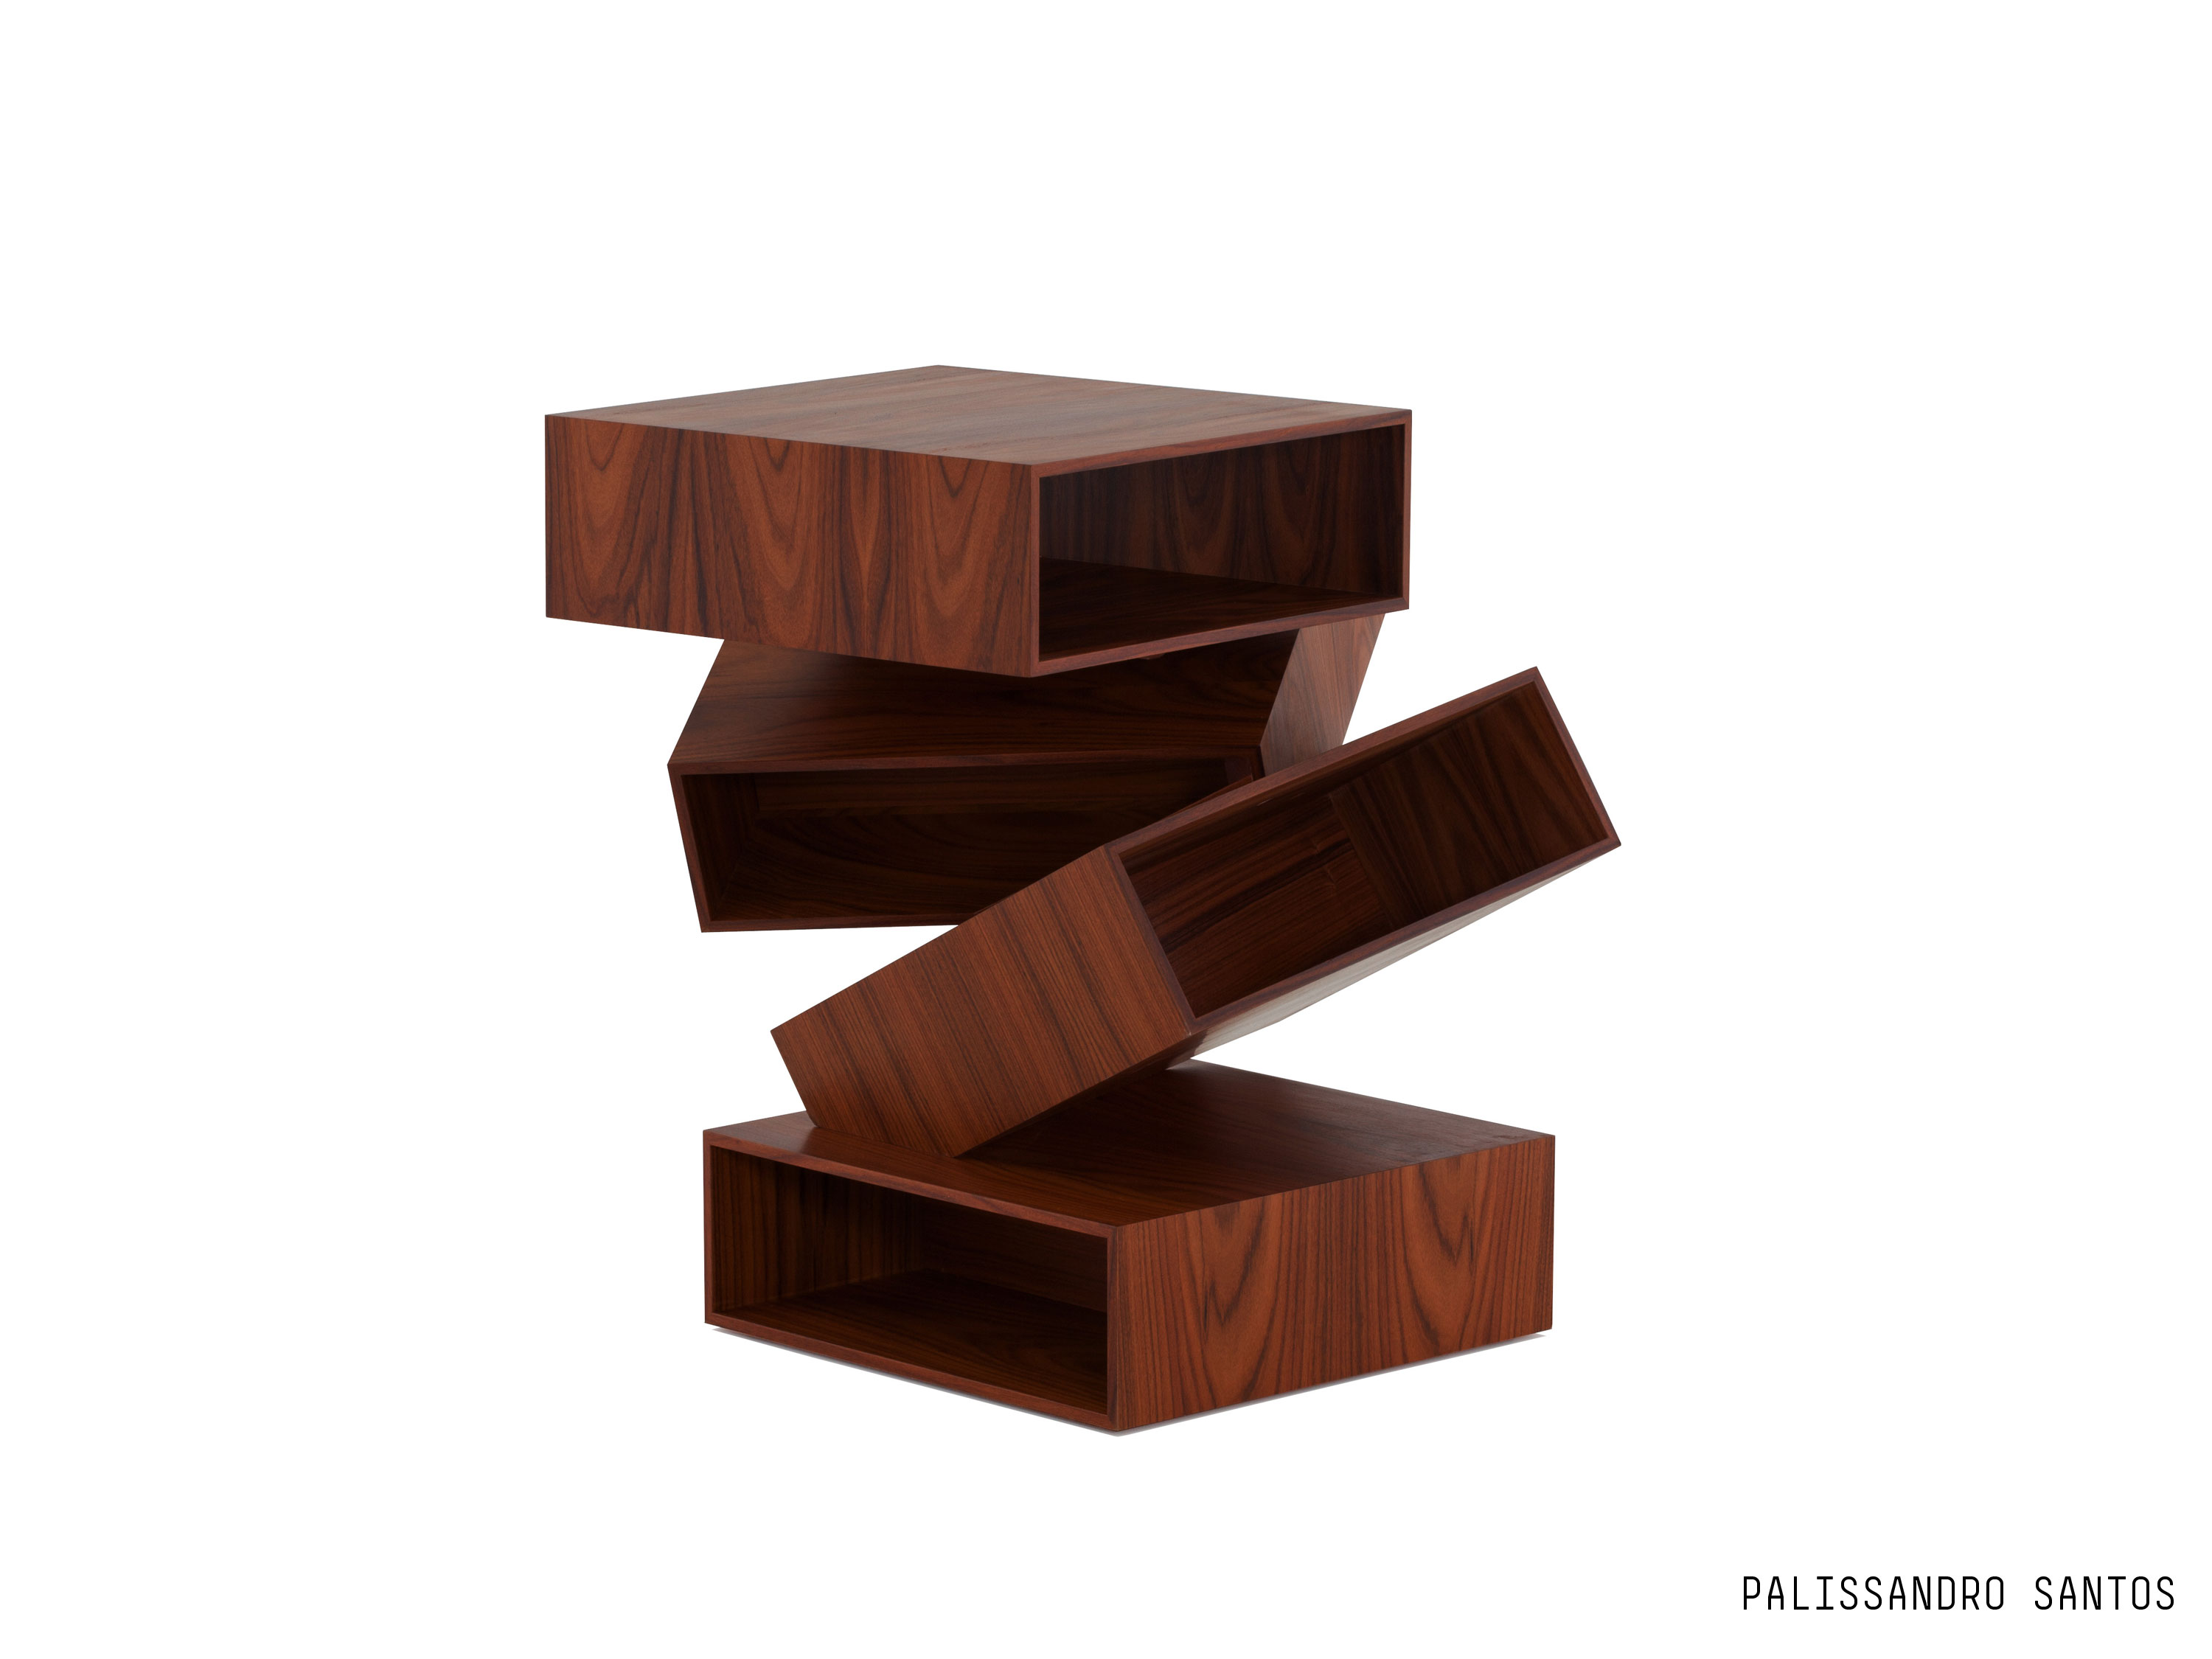 Porro, image:prodotti - Porro Spa - Balancing Boxes